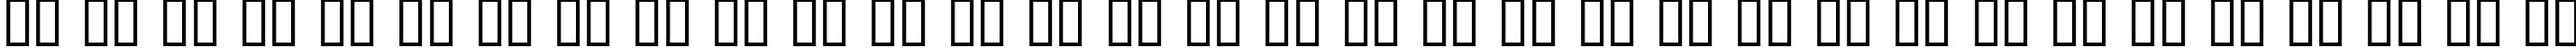 Пример написания русского алфавита шрифтом Prick